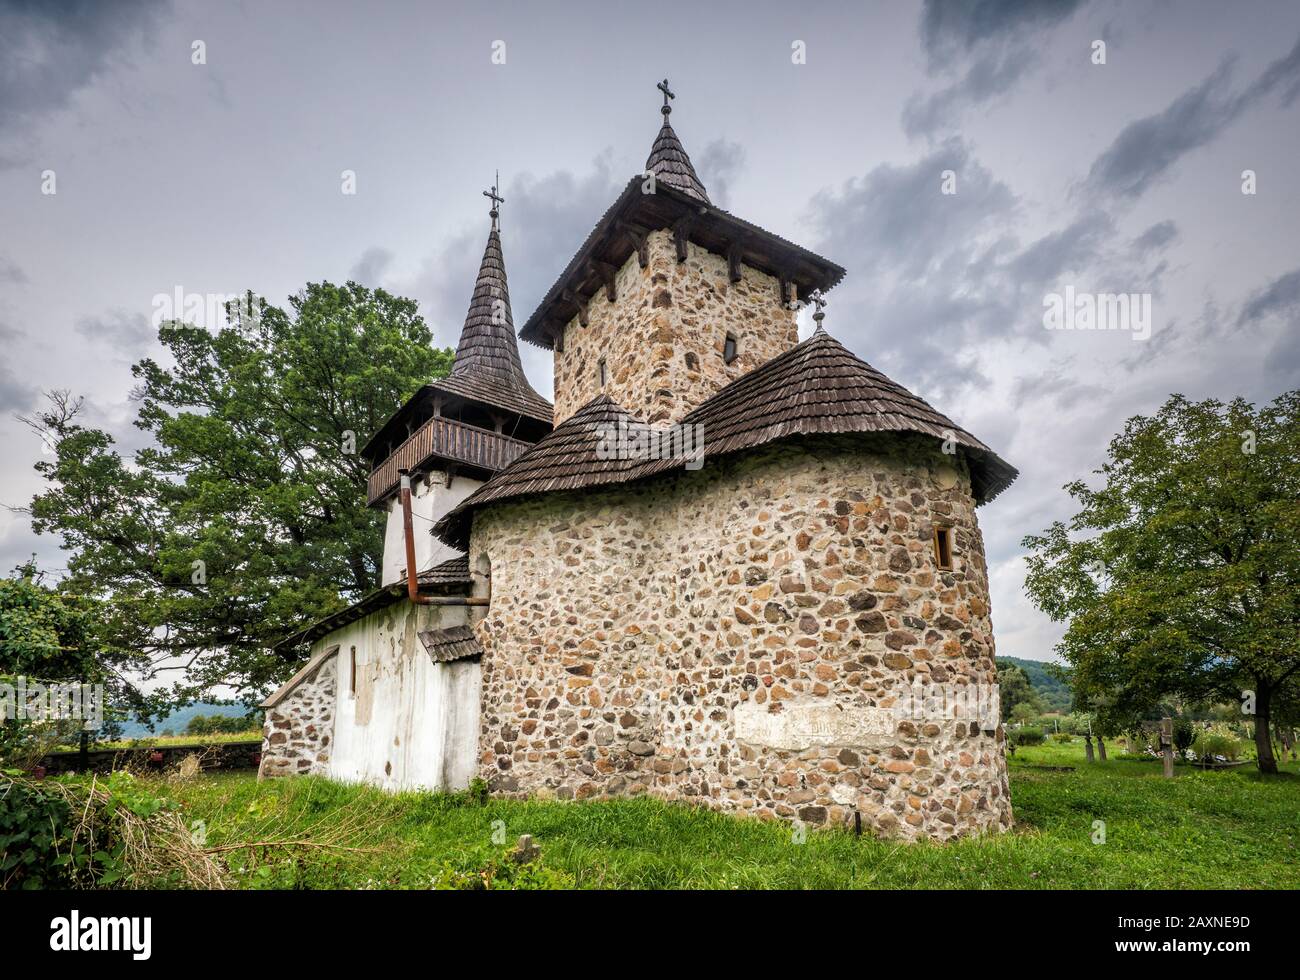 Biserica Arhanghelul Mihai, mittelalterliche orthodoxe Kirche des Erzengels Michael im Dorf Gurasada, Kreis Hunedoara, Region Siebenbürgen, Rumänien Stockfoto